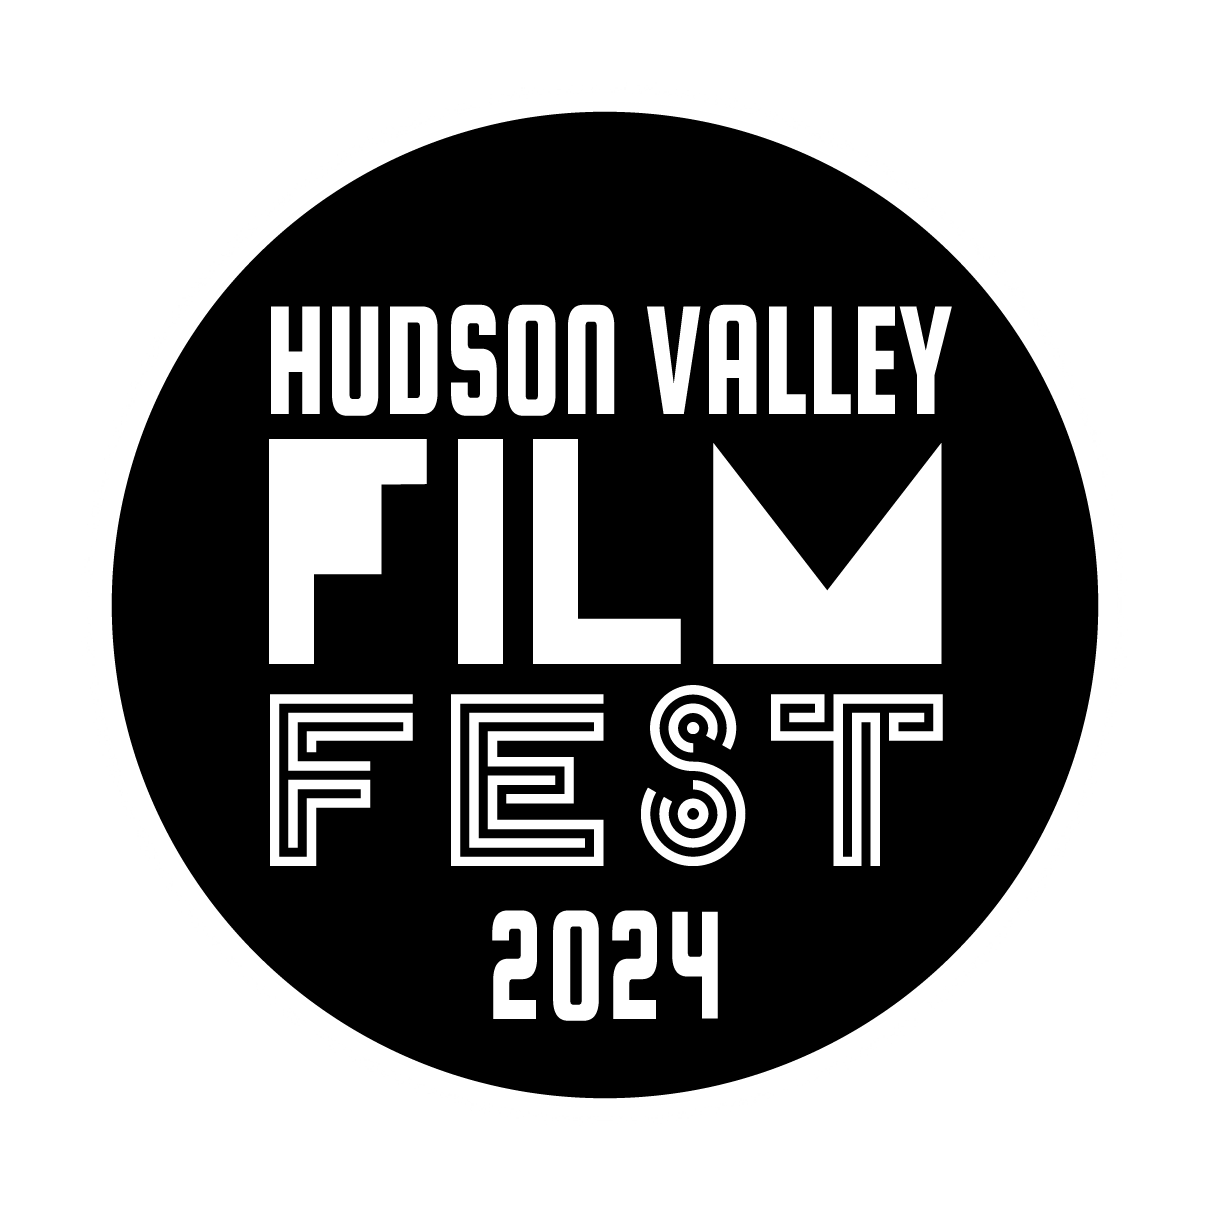 Hudson Valley Film Festival